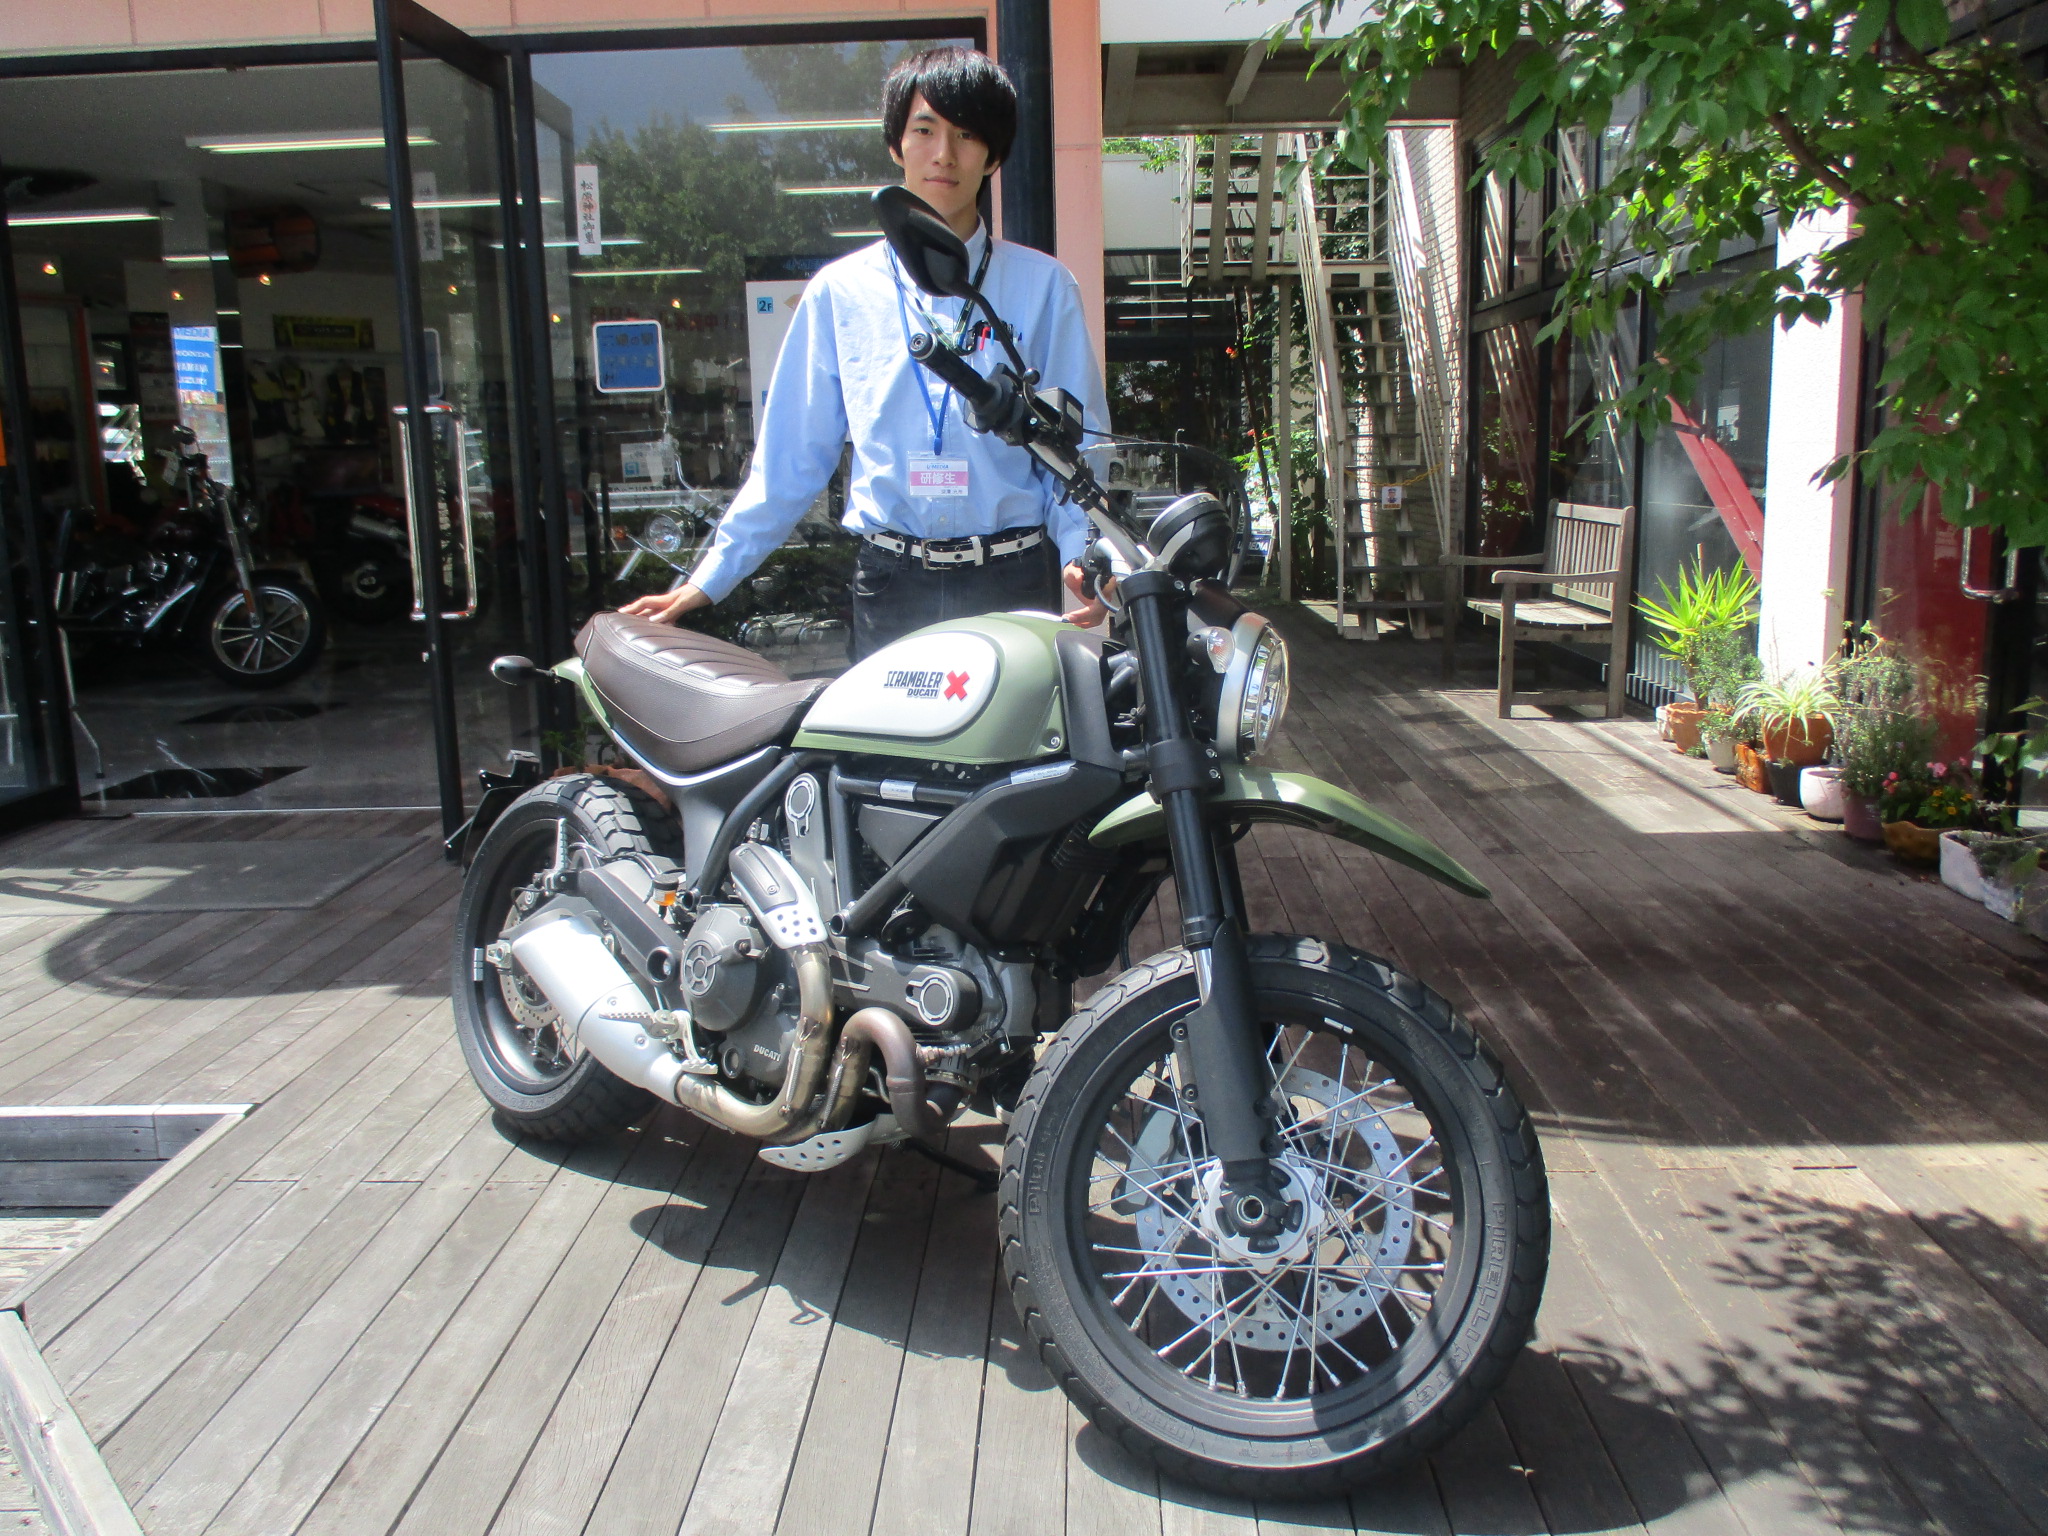 ドゥカティ中古車入庫しました 最新情報 U Media ユーメディア 中古 バイク 新車バイク探しの決定版 神奈川 東京でバイク探すならユーメディア